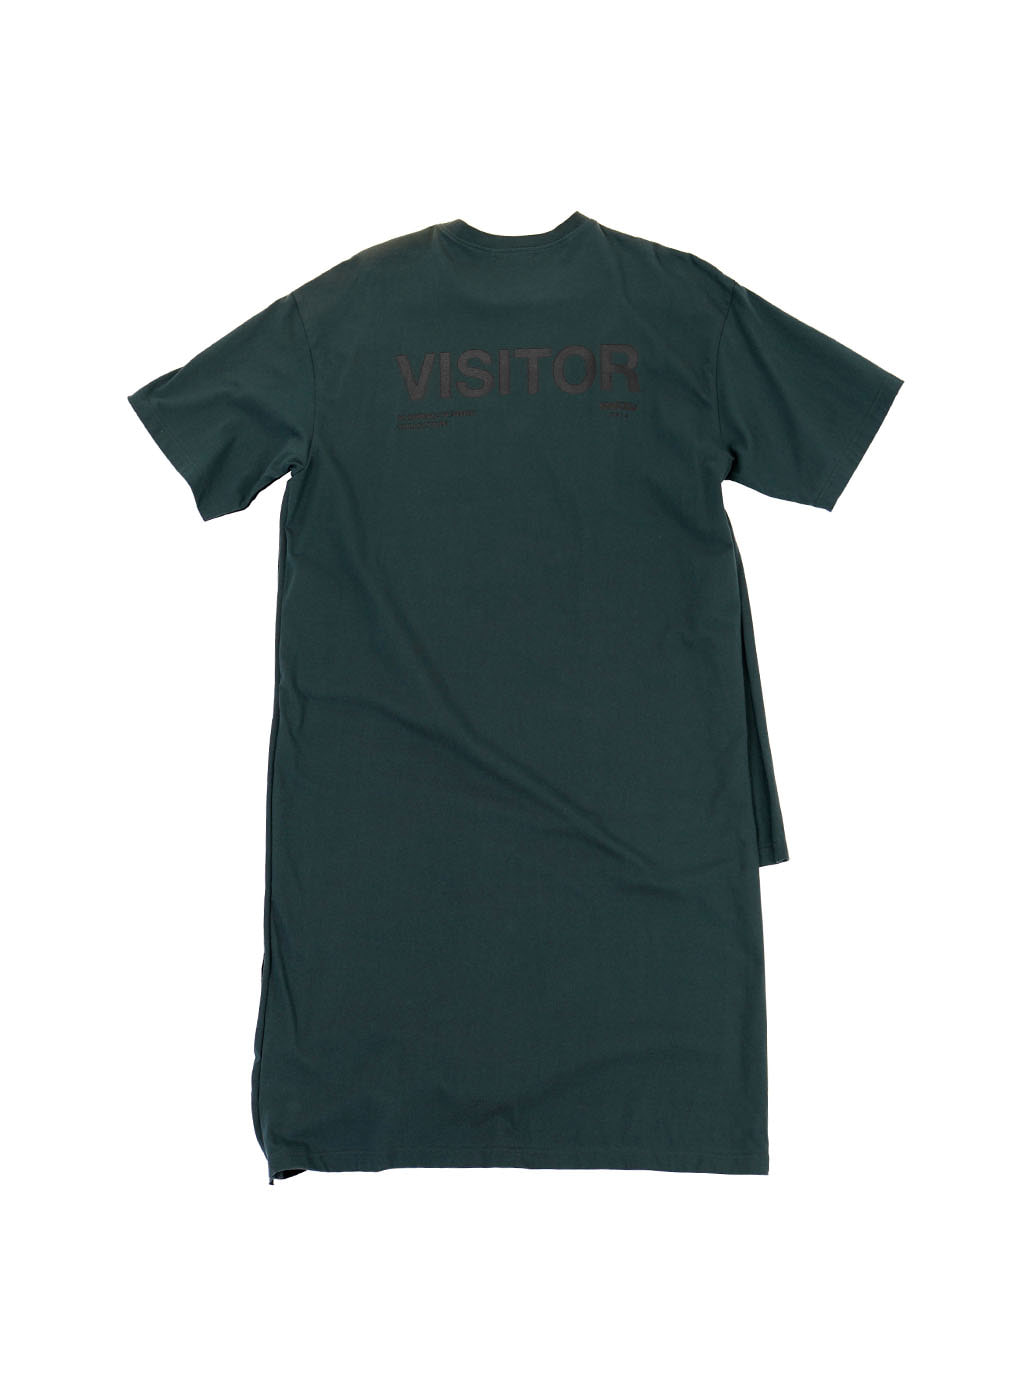 Black/Khaki Multi Structured &#039;Visitor&#039; T-shirt Dress